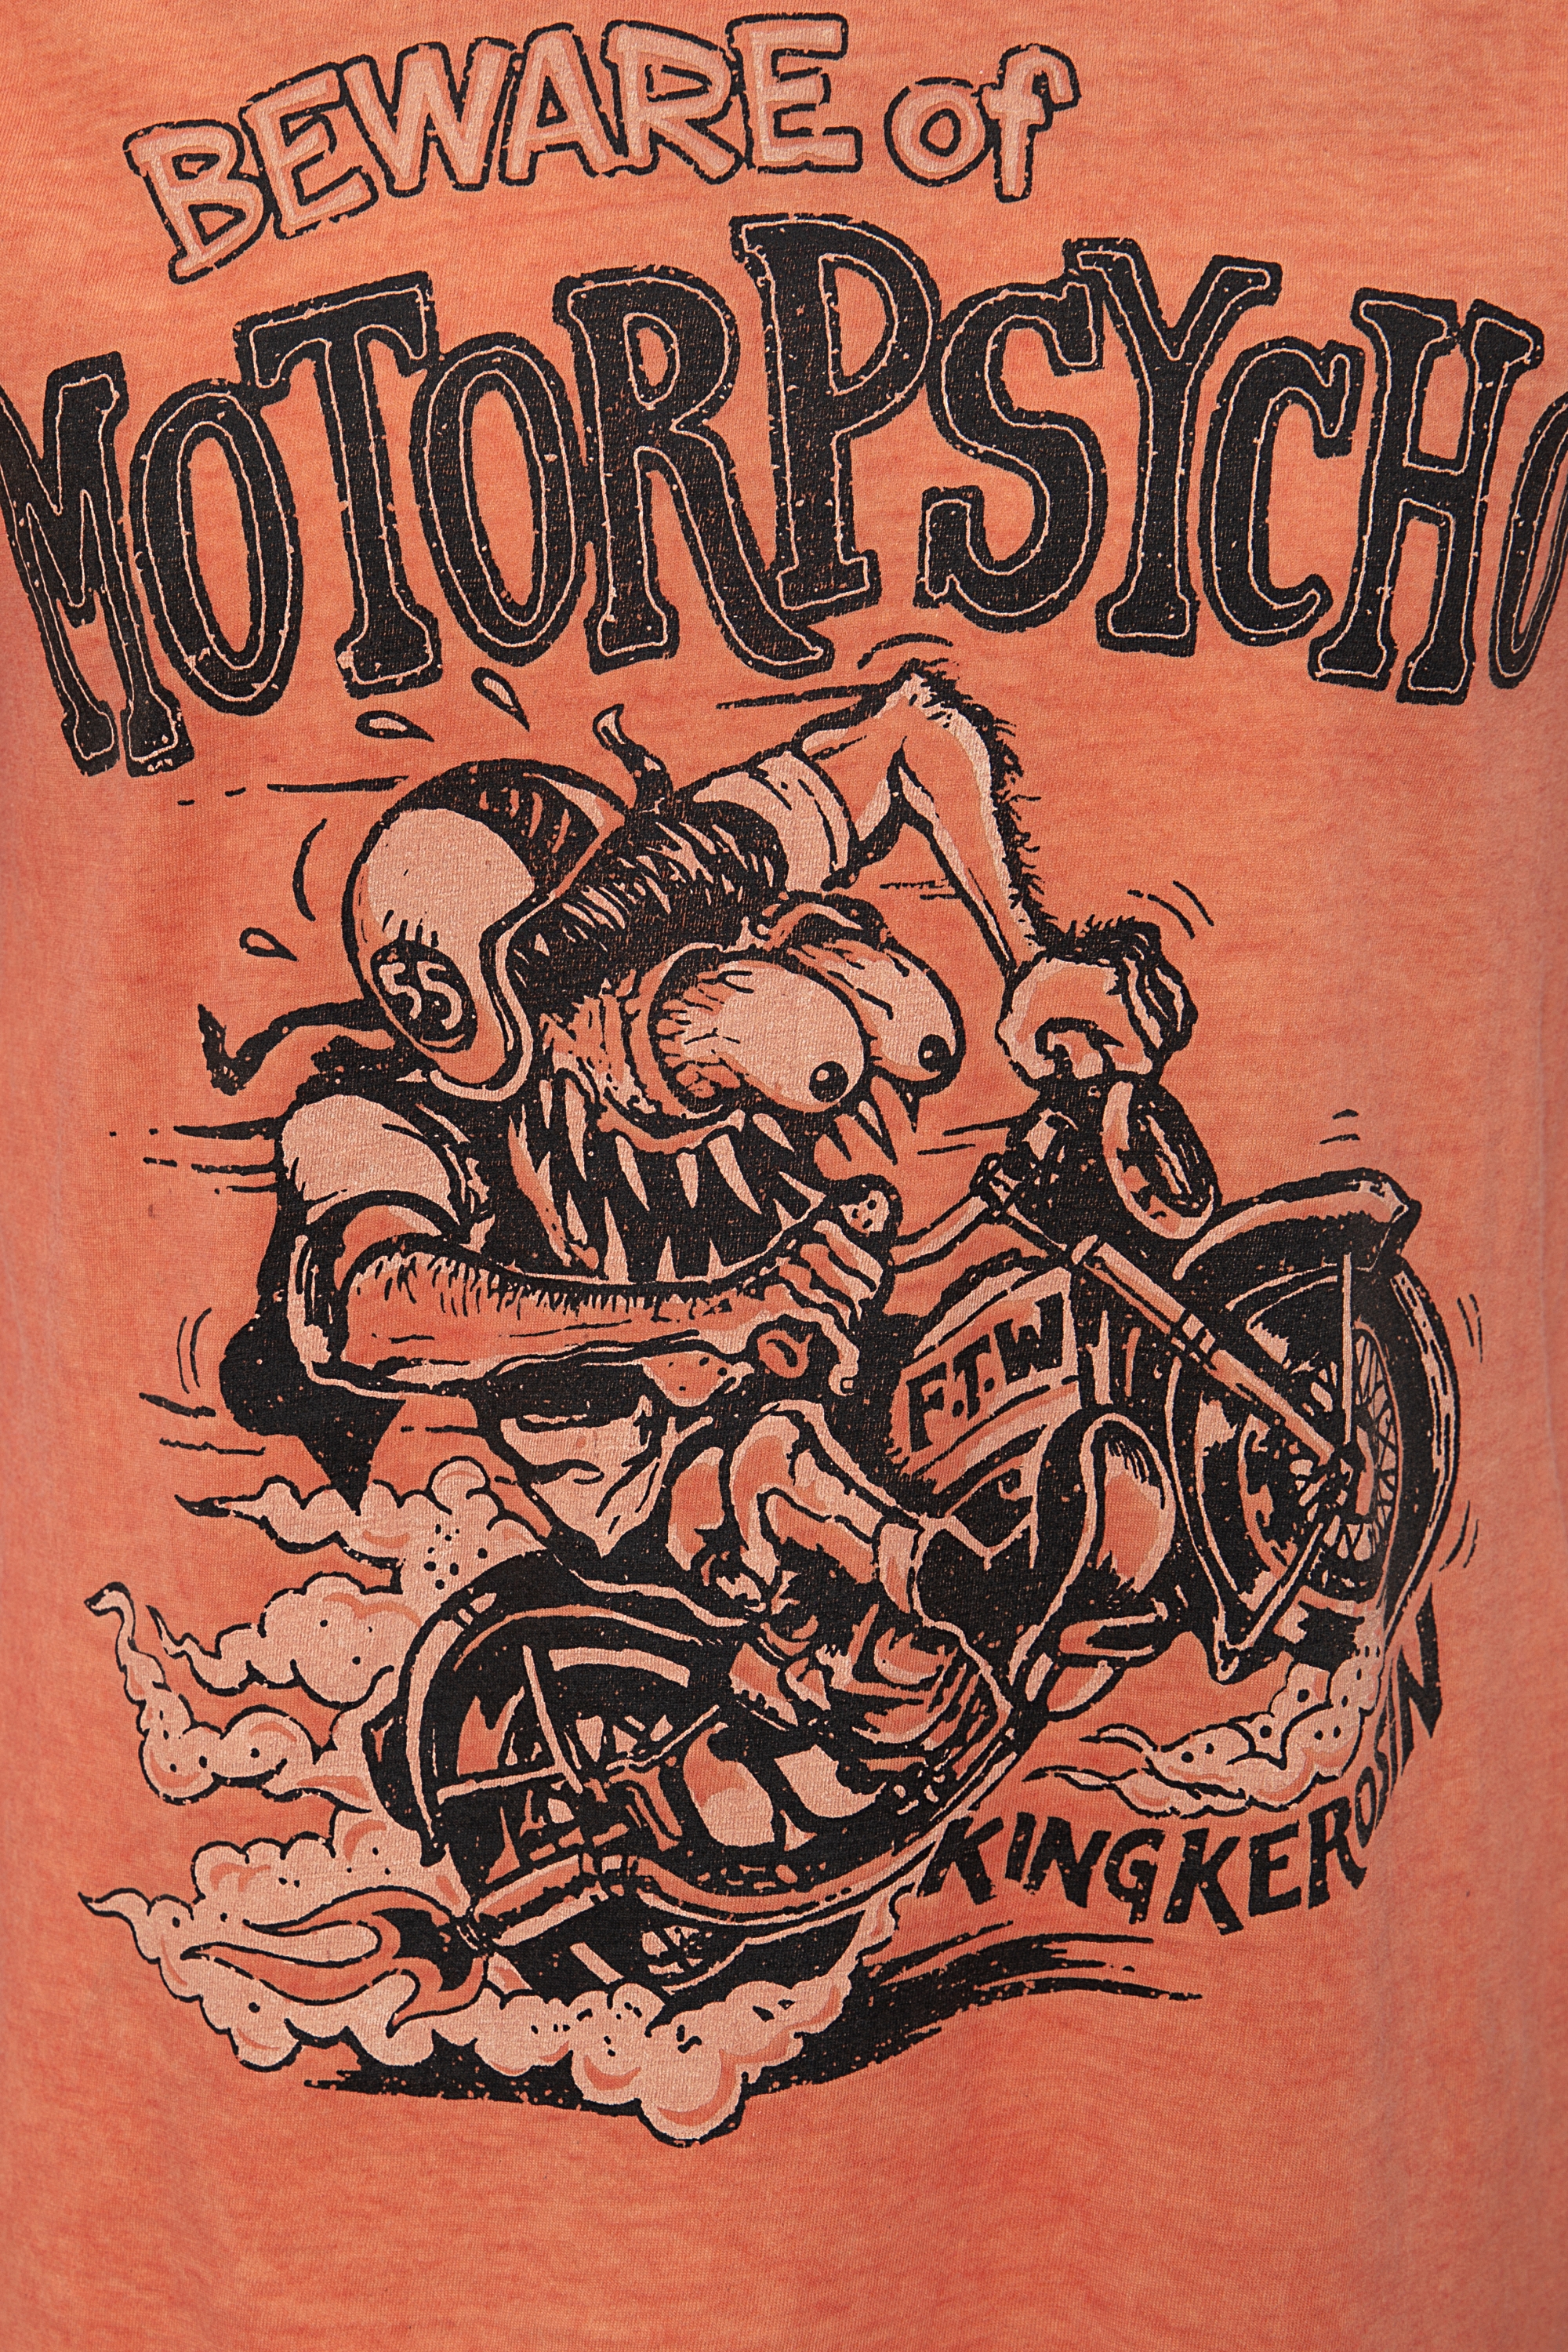 King Kerosin T-Shirt - Motorpsycho - Orange XXL